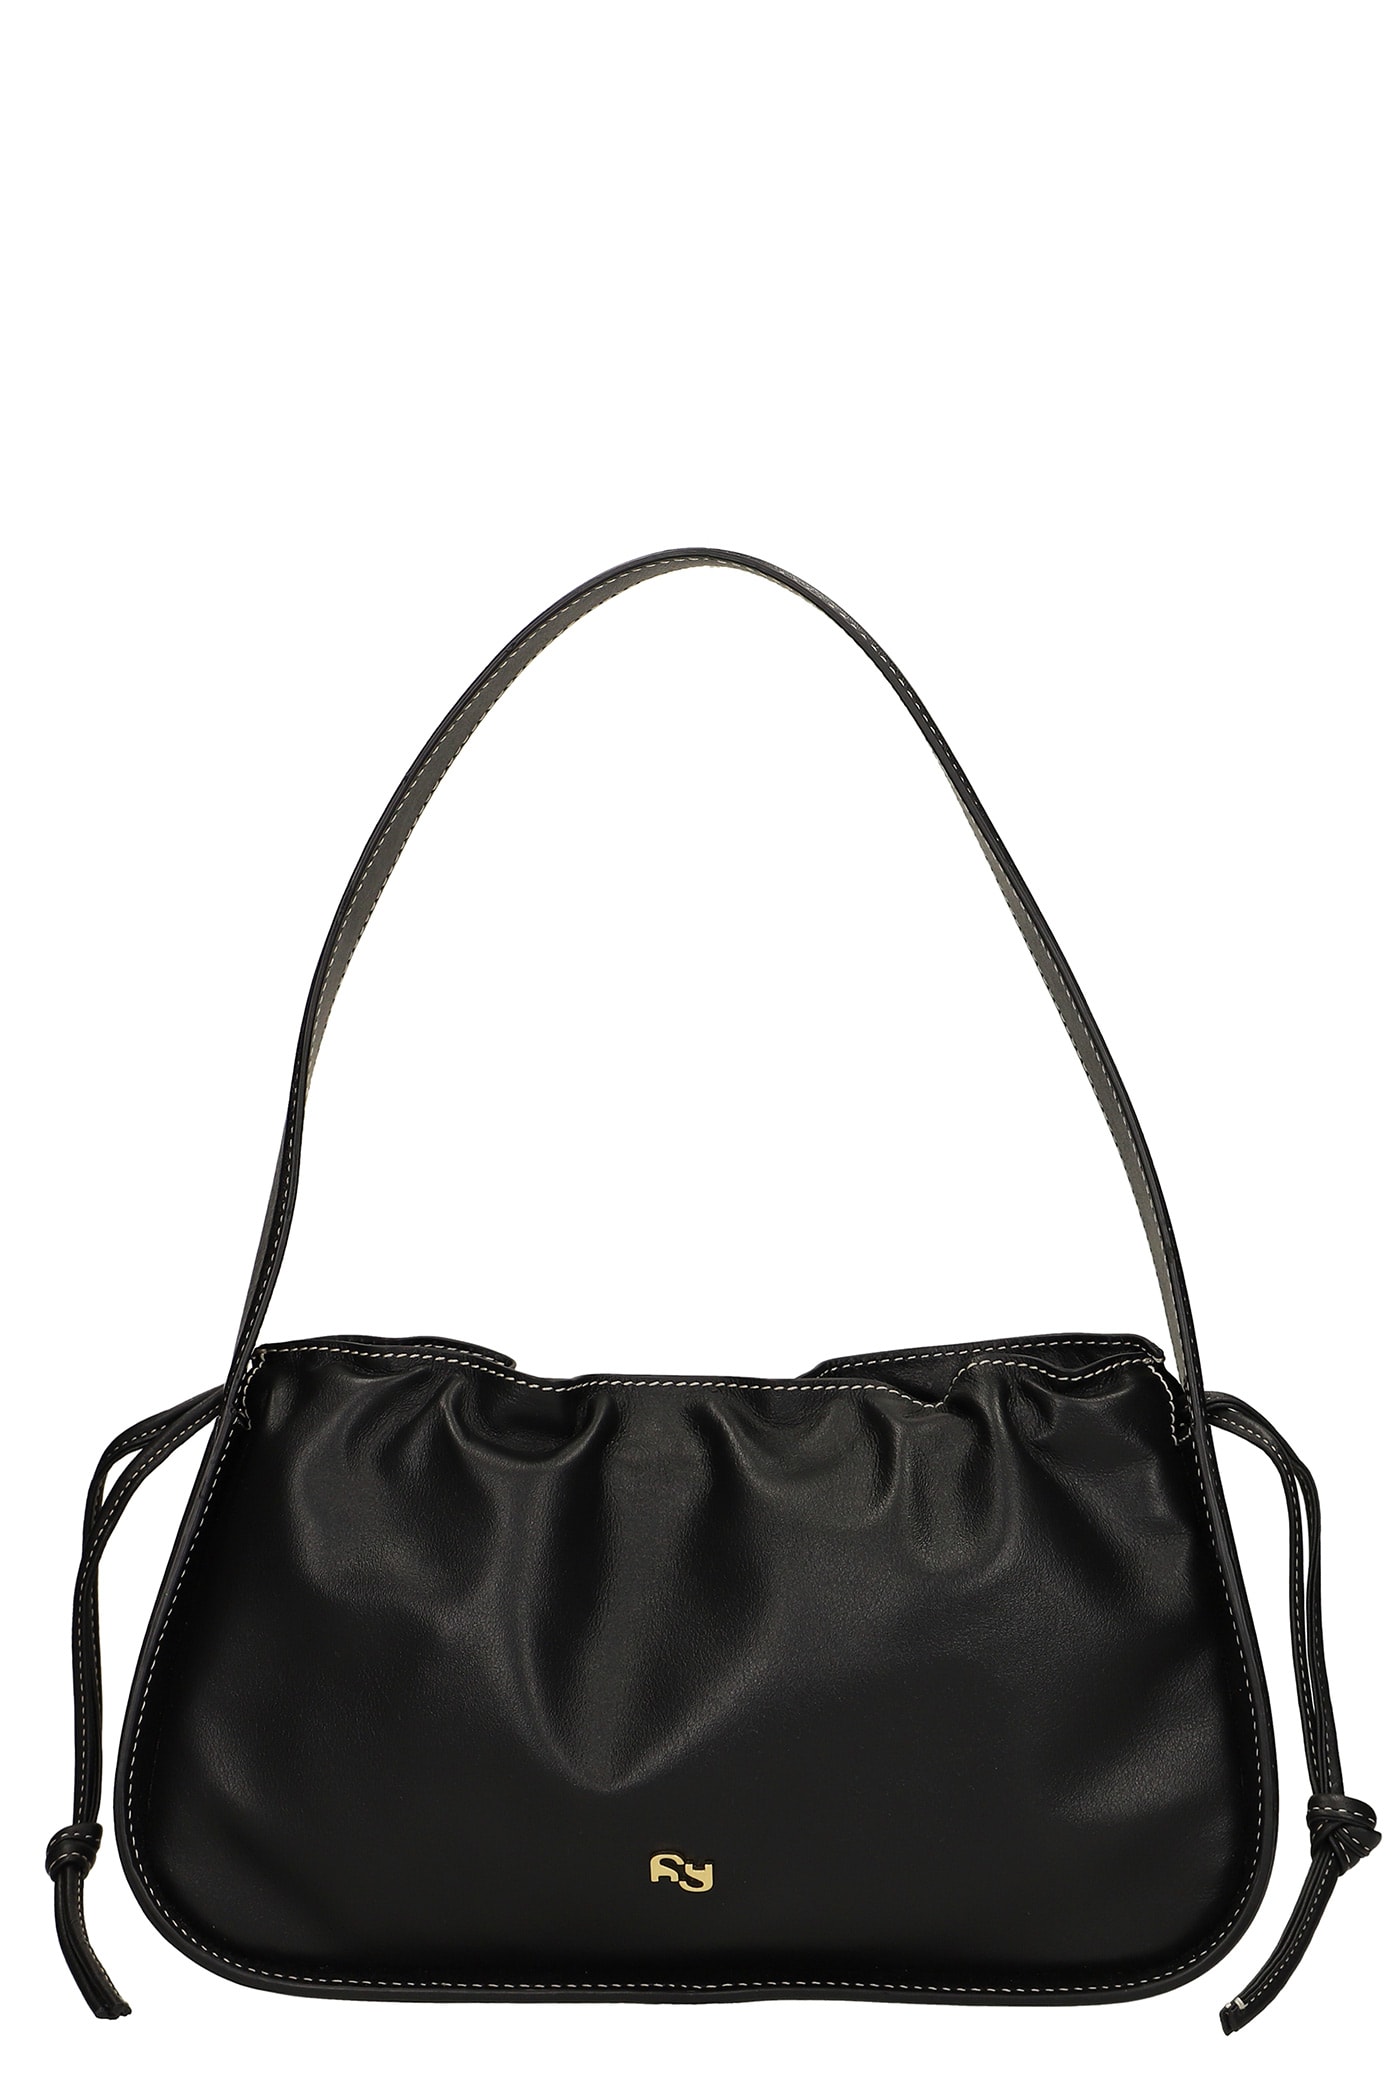 YUZEFI Scrunch Shoulder Bag In Black Leather